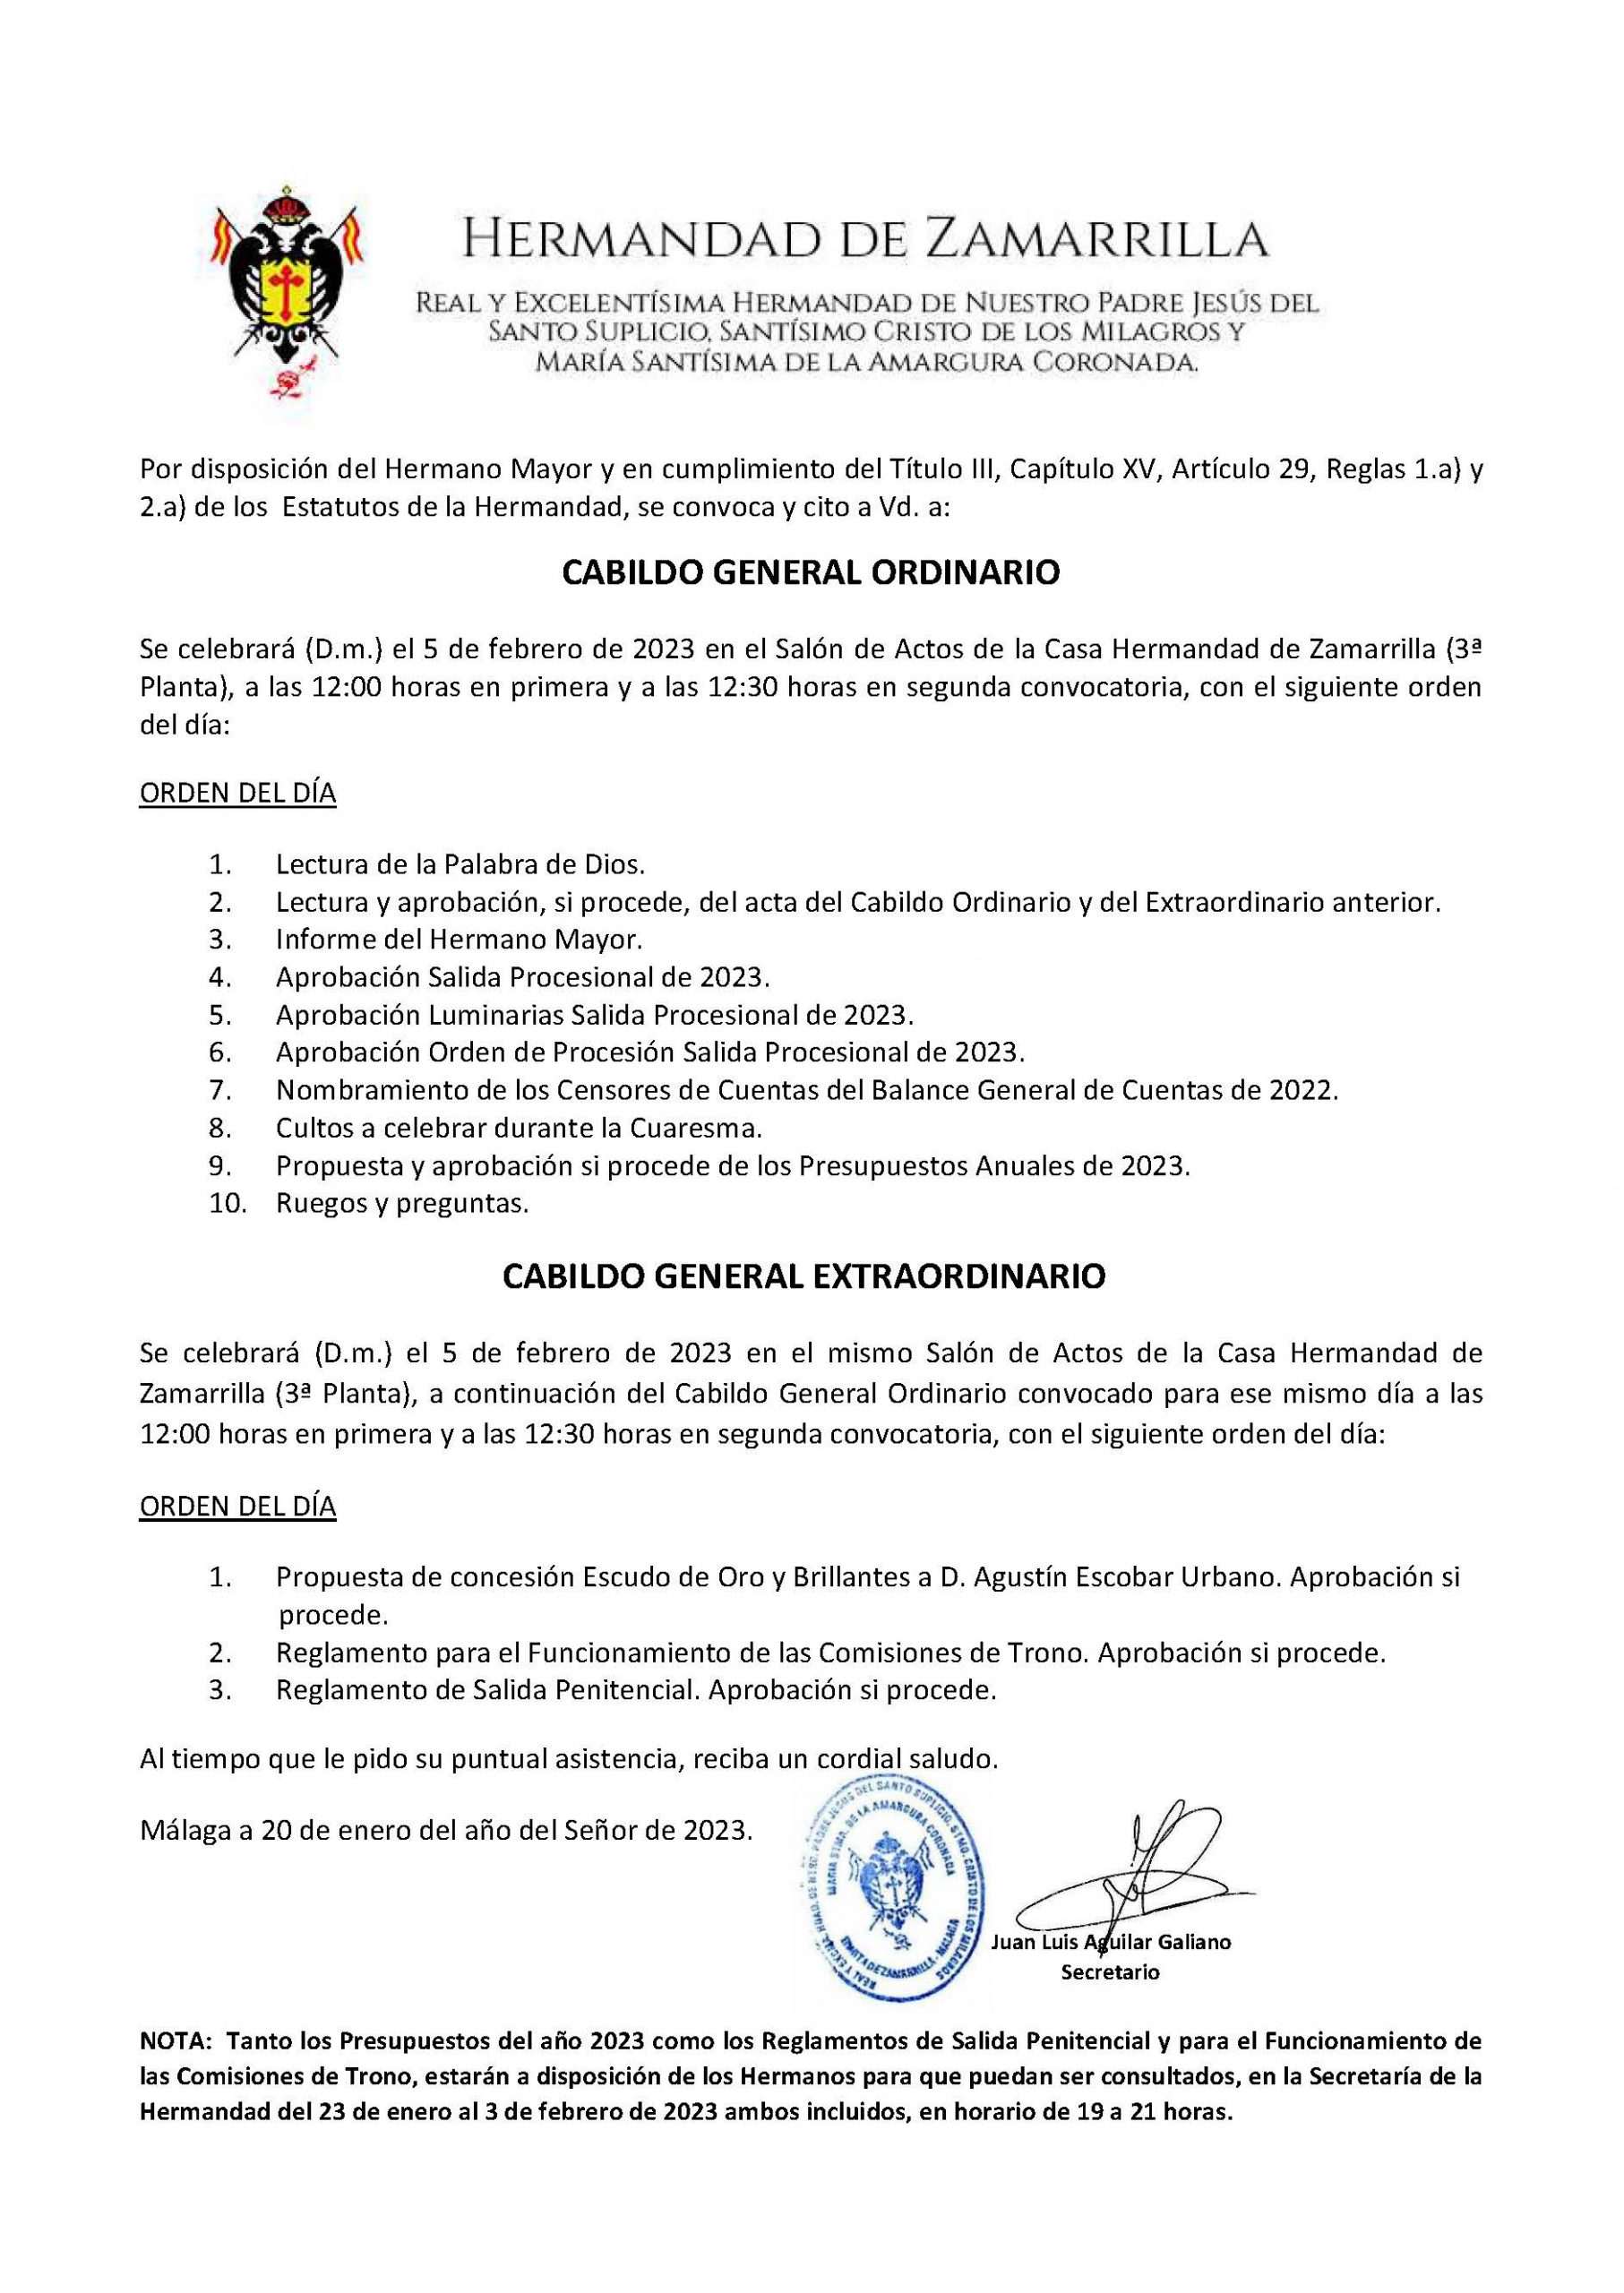 CITACIÓN CABILDO ORDINARIO Y EXTRAORDINARIO (FEBRERO 2023)